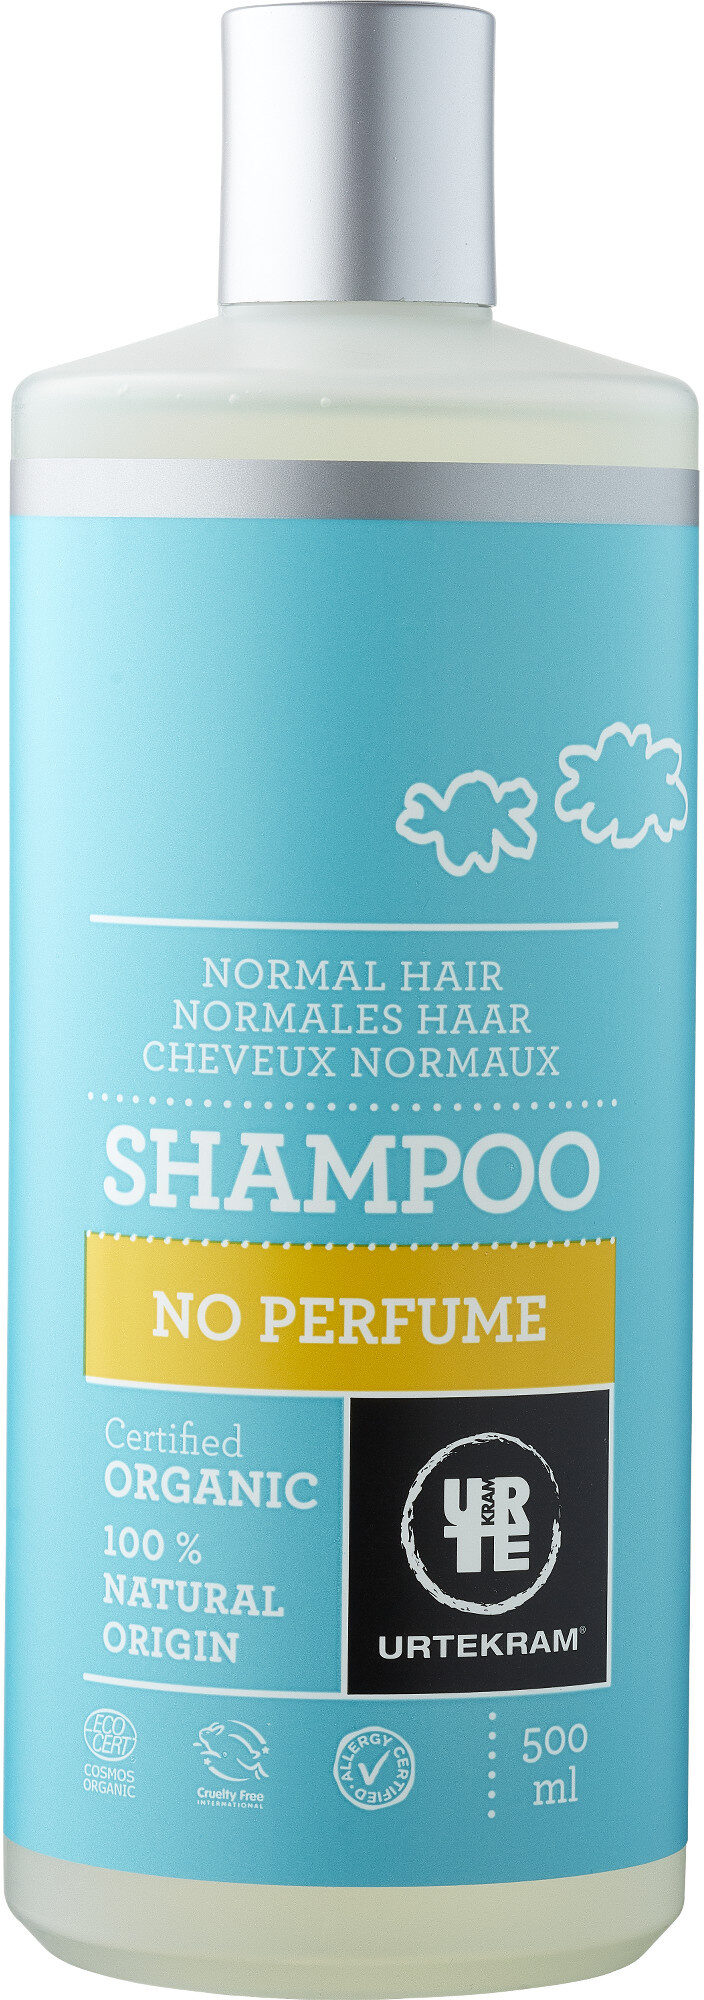 Shampoo no perfume - Tuote - es